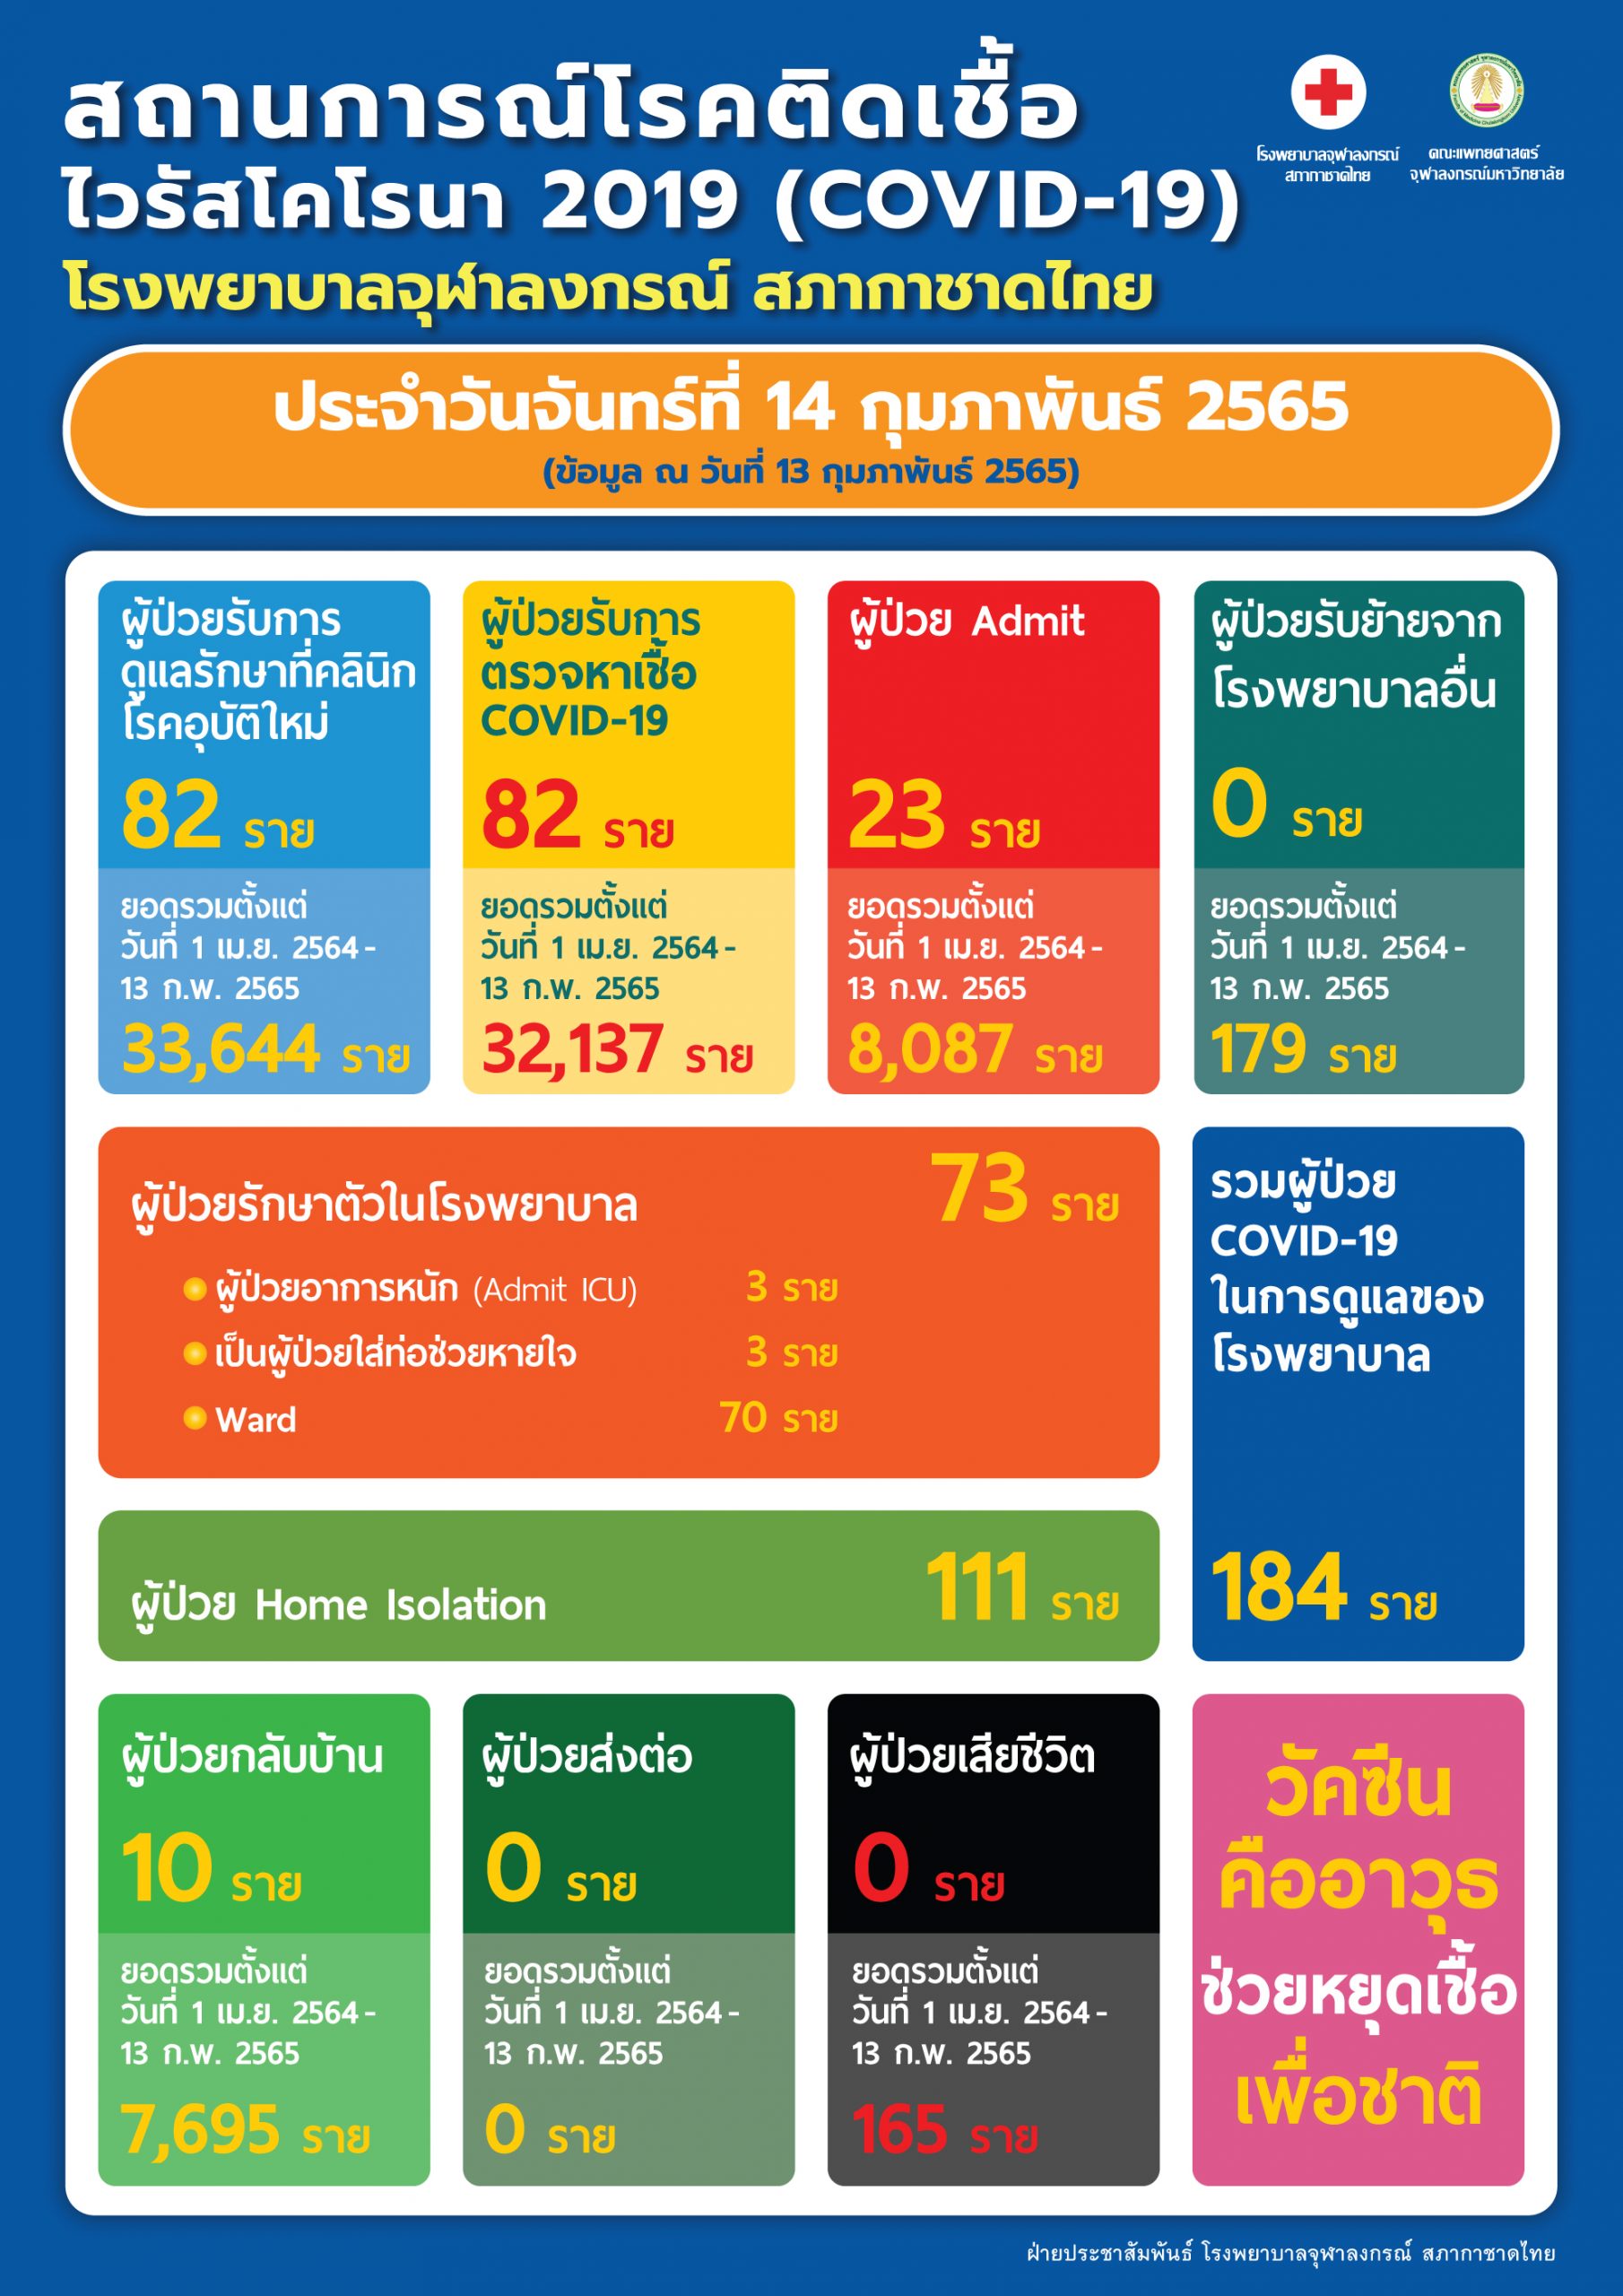 สถานการณ์โรคติดเชื้อไวรัสโคโรนา 2019 (COVID-19) โรงพยาบาลจุฬาลงกรณ์ สภากาชาดไทย ประจำวันจันทร์ที่ 14 กุมภาพันธ์ 2565